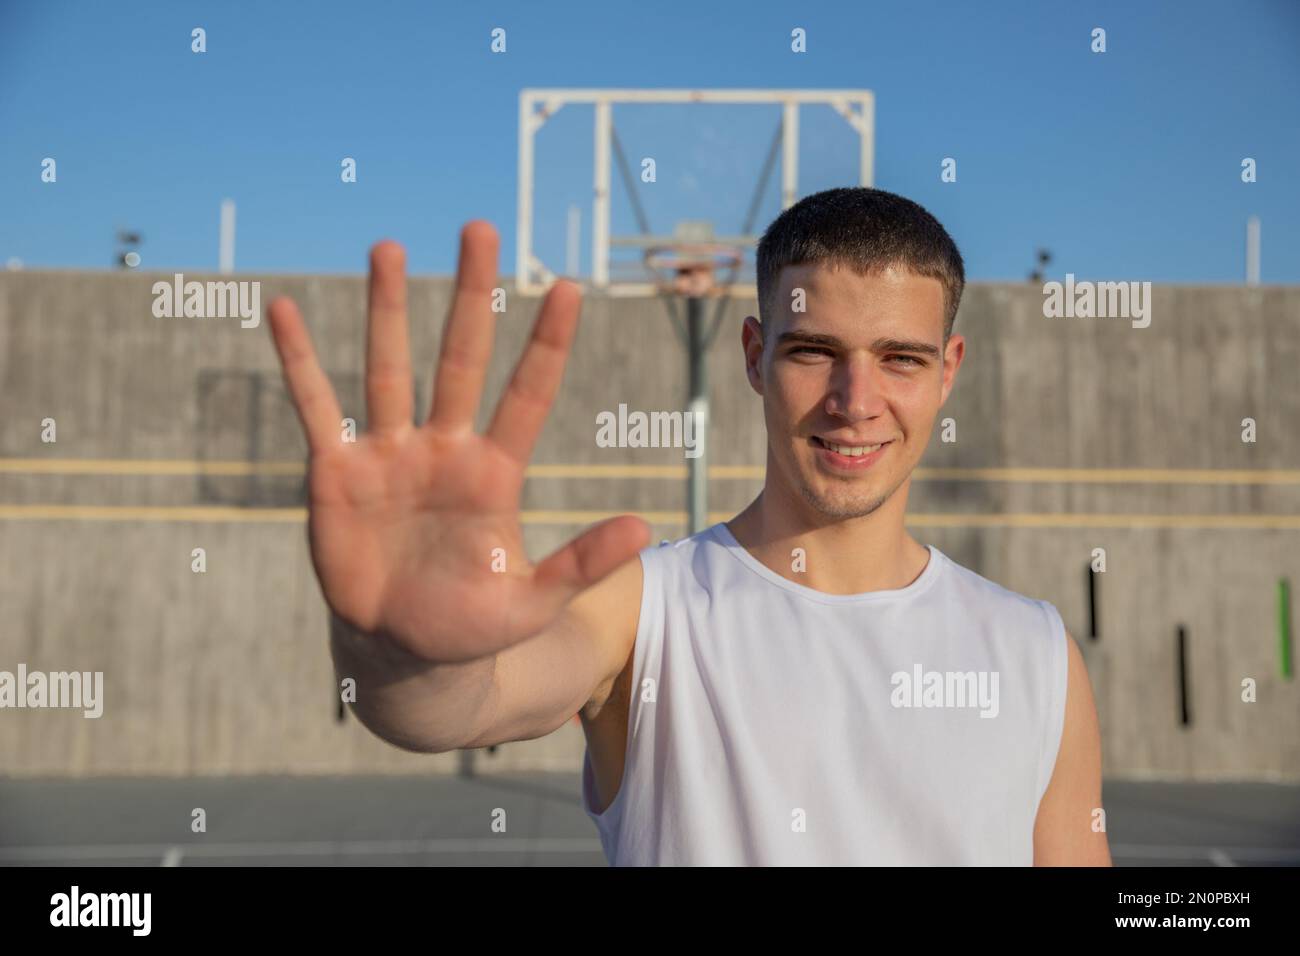 Un jeune joueur de basket-ball sur un terrain de basket-ball montre sa paume et ses sourires Banque D'Images